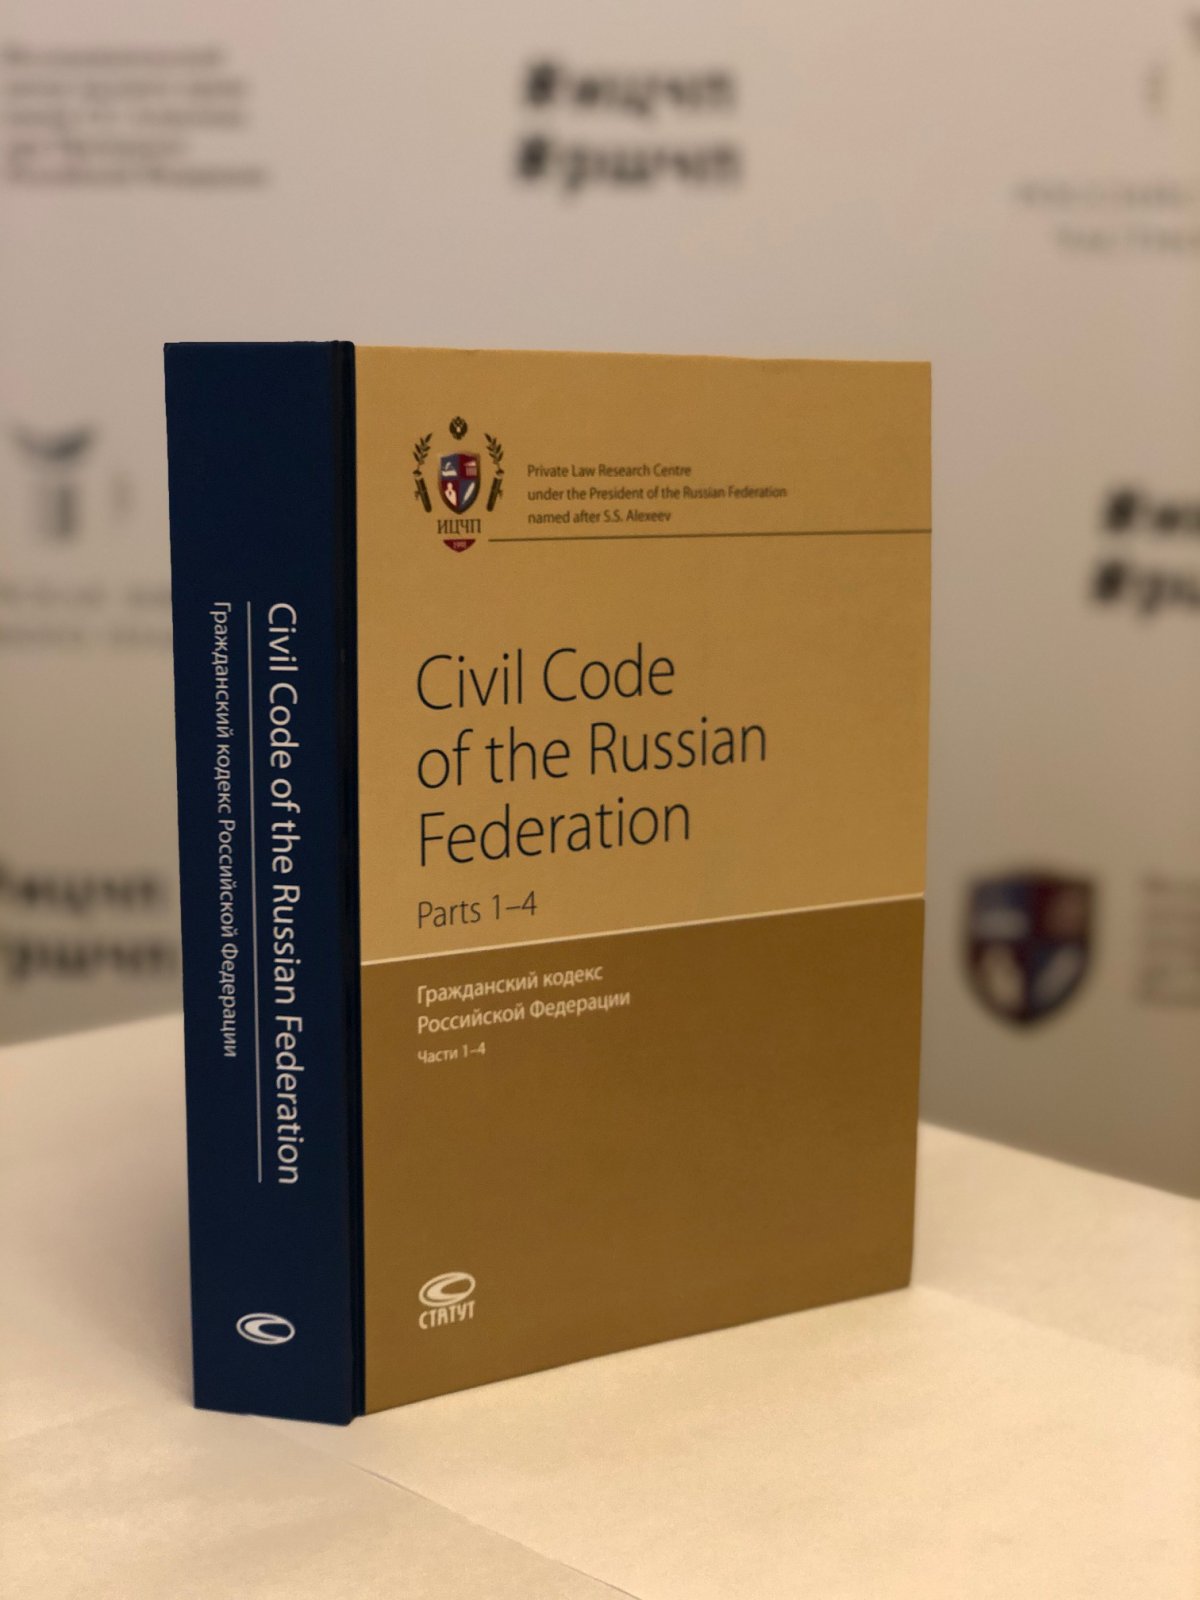 Исследовательский центр частного права представляет новое издание - перевод на английский язык всех четырех частей Гражданского кодекса Российской Федерации, выполненный по состоянию на 20 ноября 2019 года